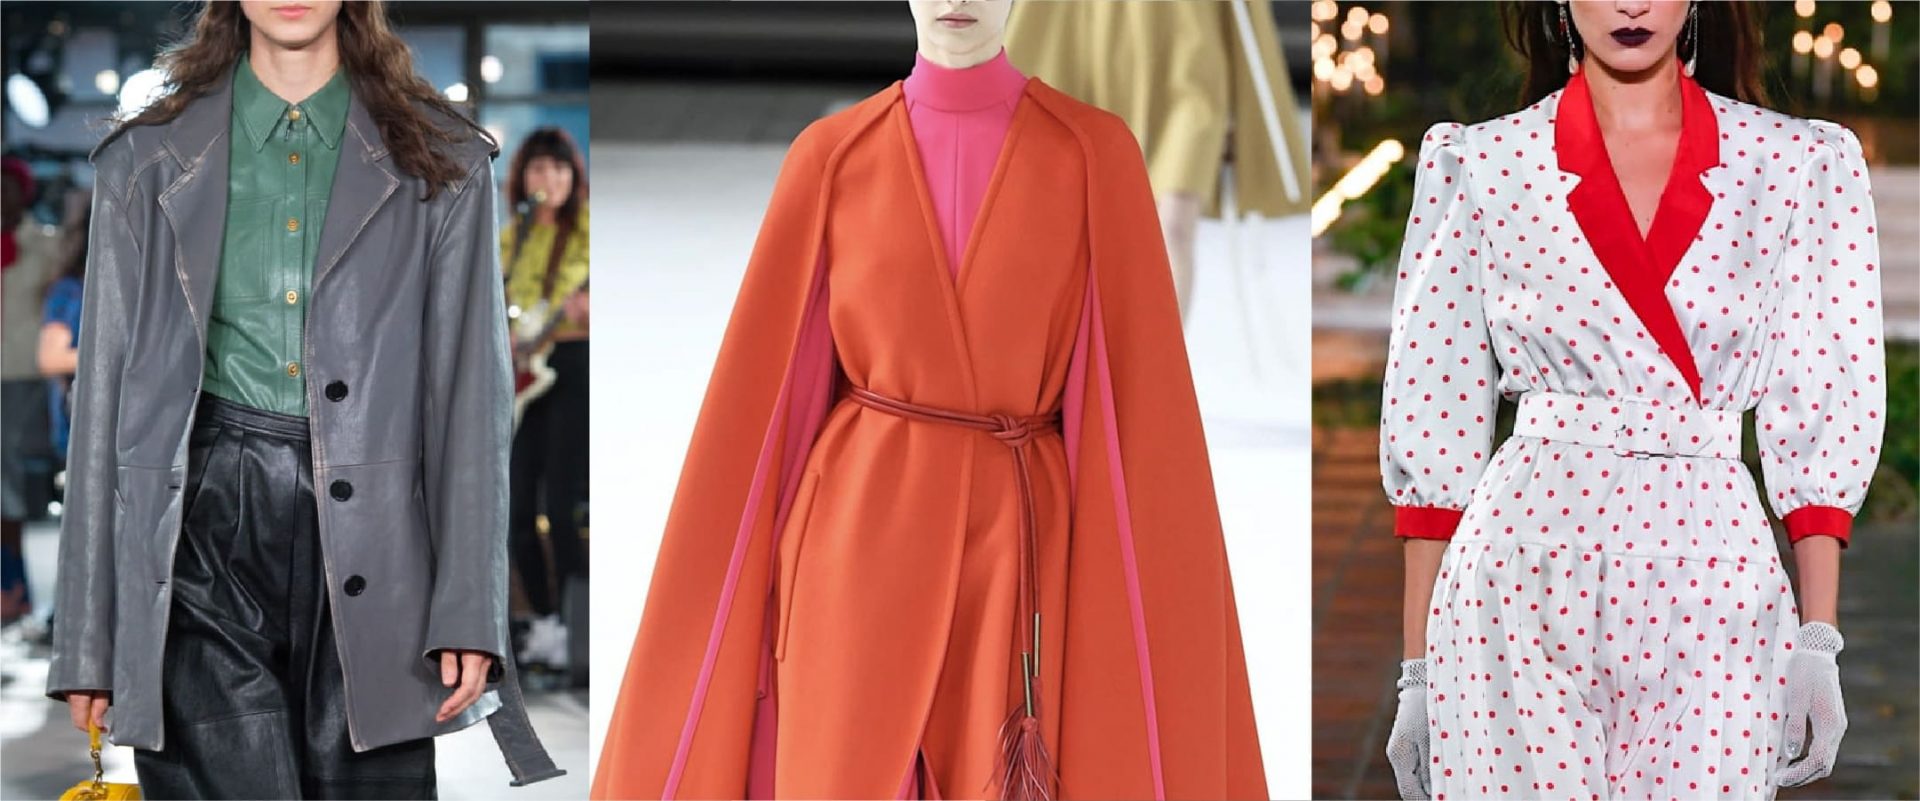 New York Fashion Week 2020: queste sono le tendenze moda per la prossima stagione autunno/inverno.